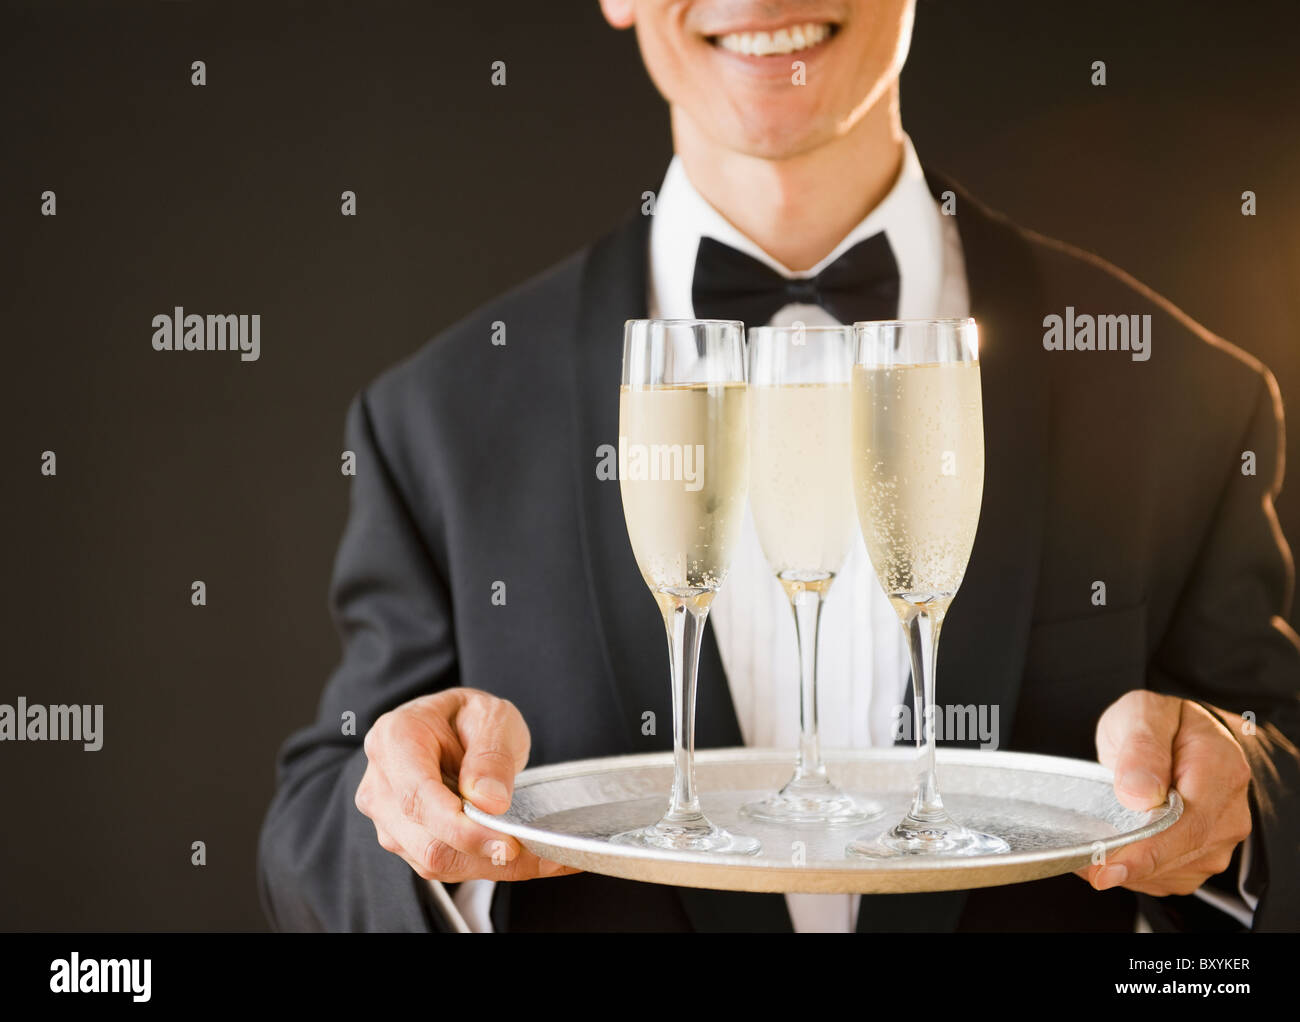 Kellner tragen Fliege und Holding-Tablett mit Champagner-Flöten, Studio  gedreht Stockfotografie - Alamy